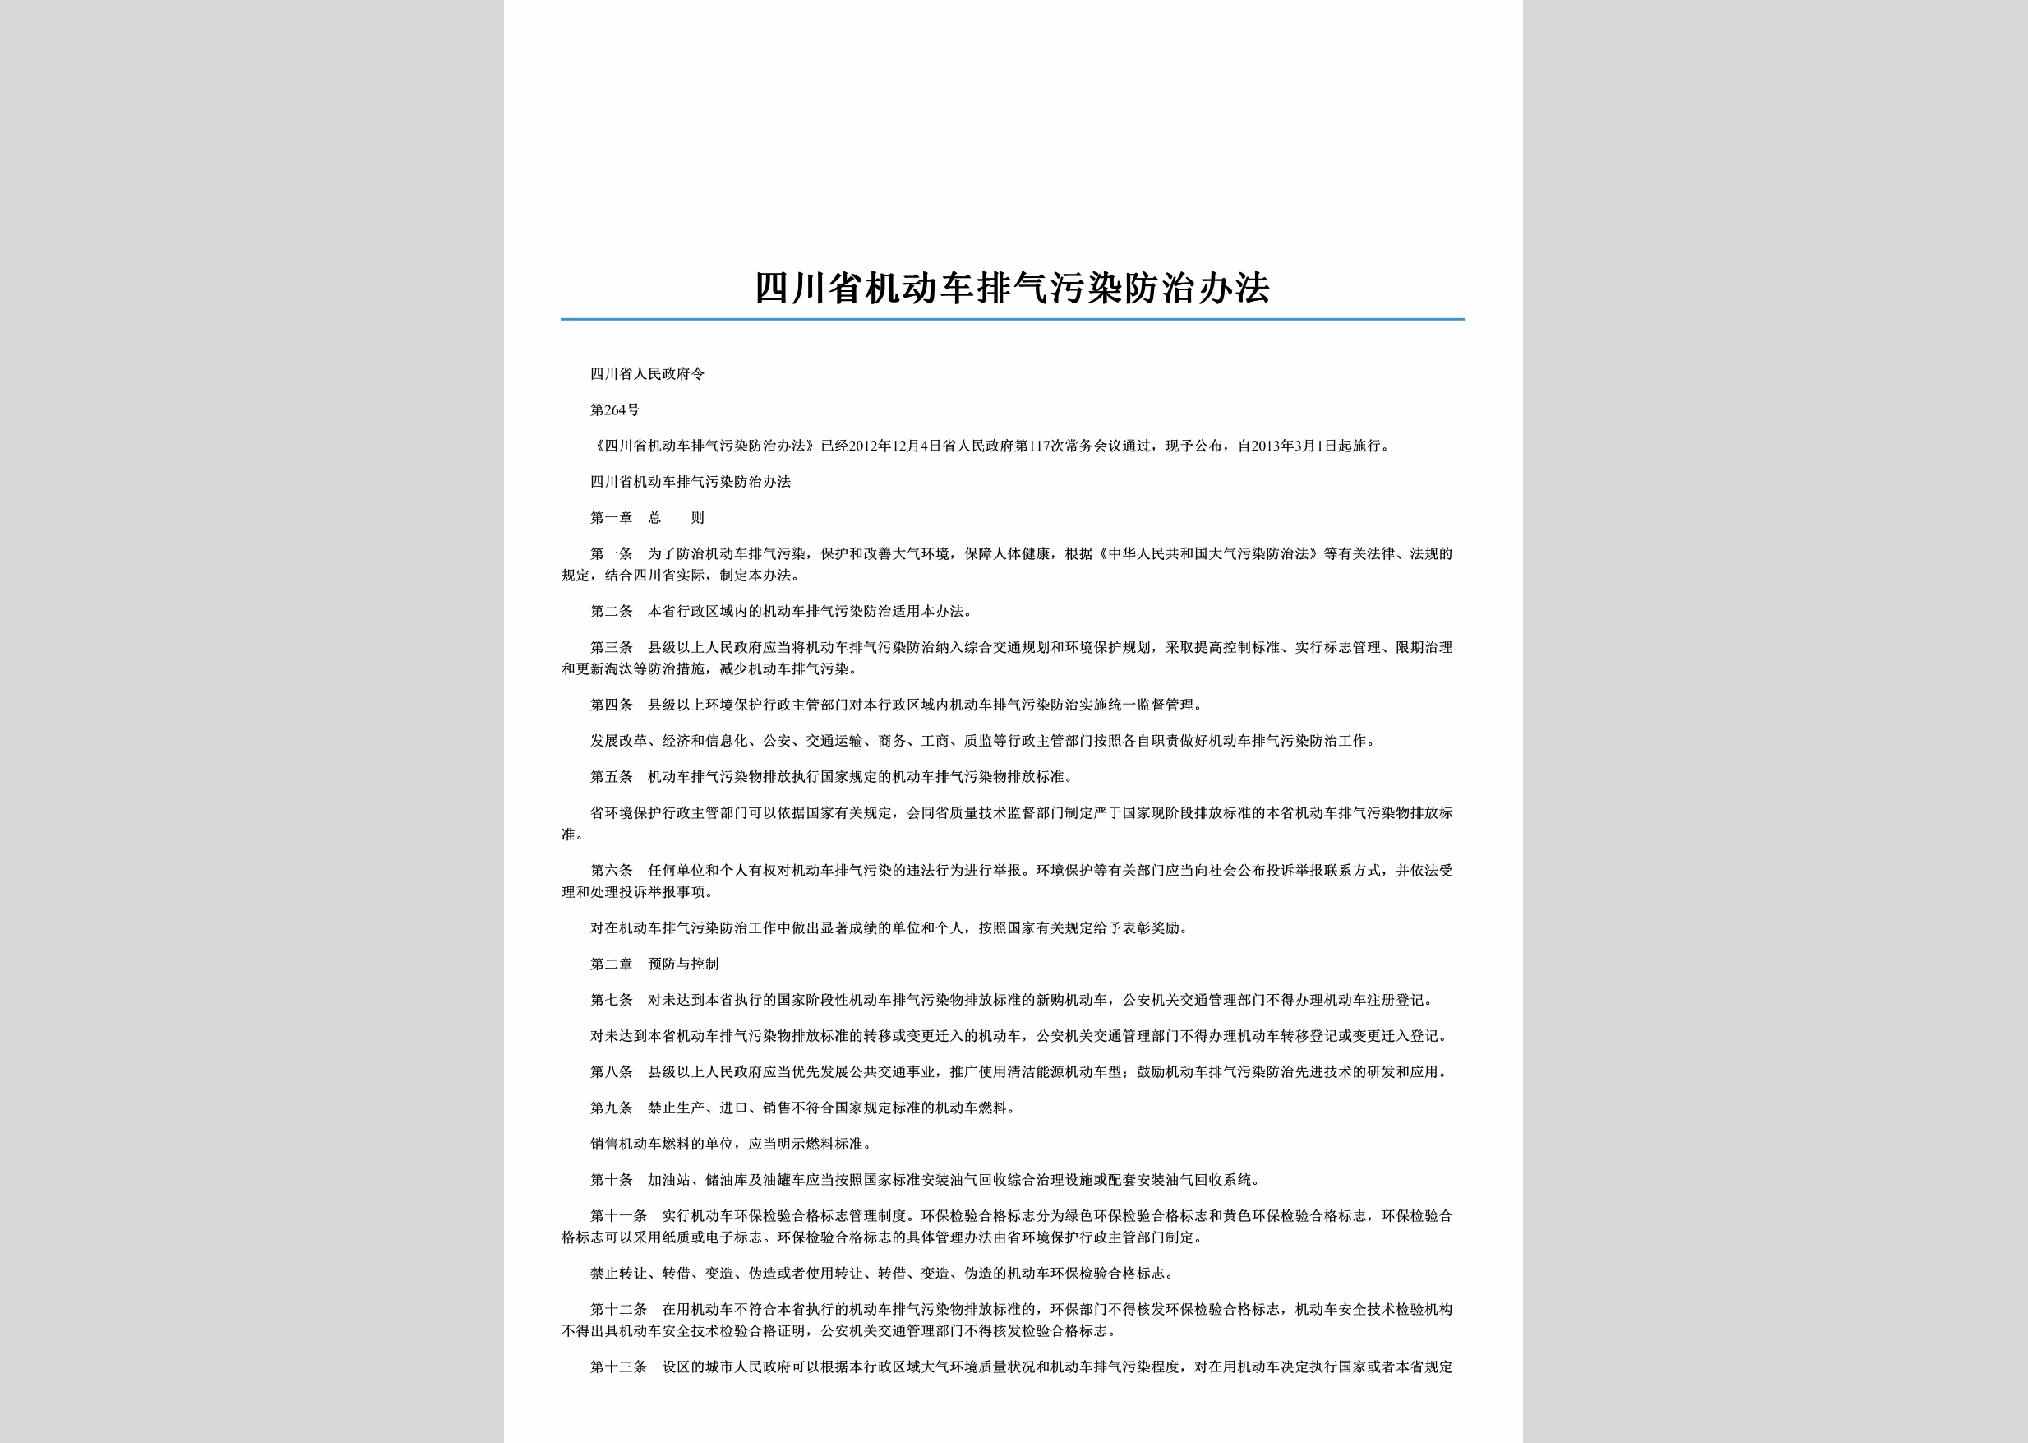 四川省人民政府令第264号：四川省机动车排气污染防治办法